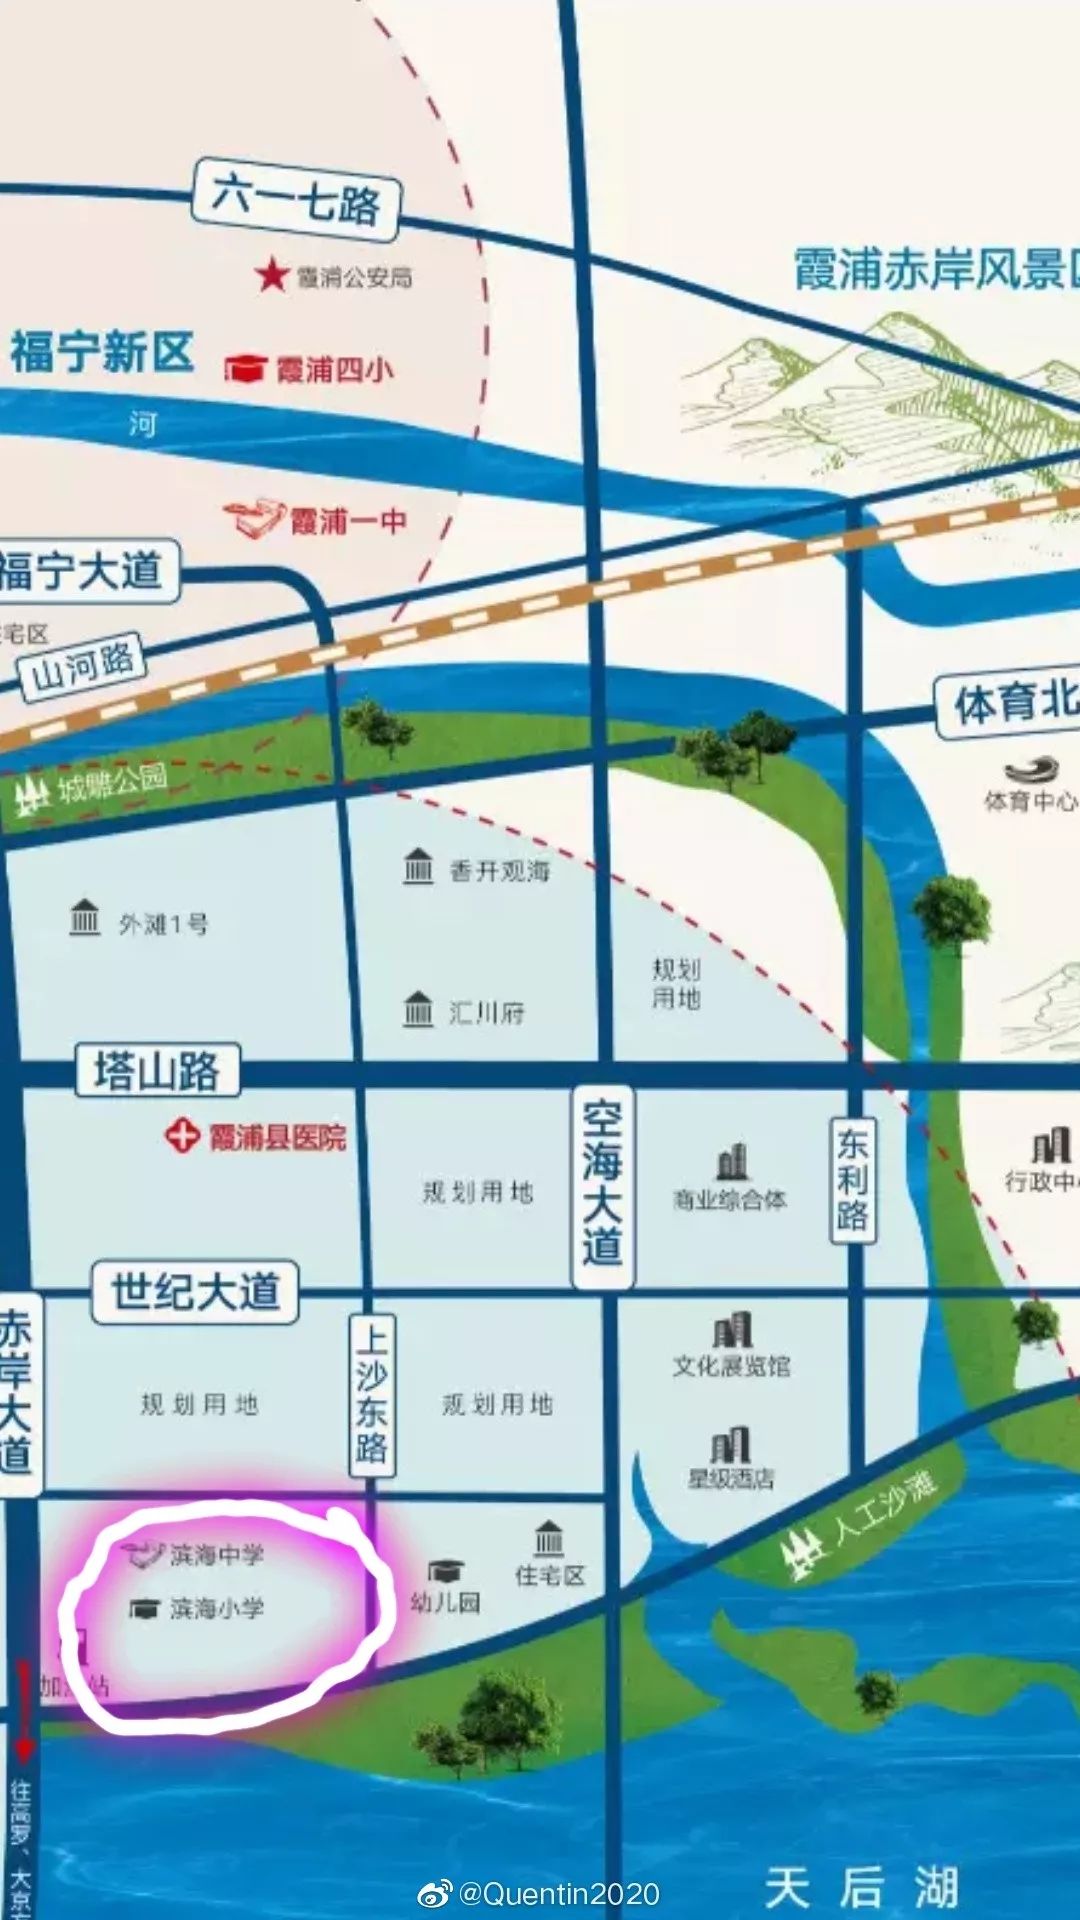 霞浦县滨海学校最新方案,规划用地48亩,拟办36个班